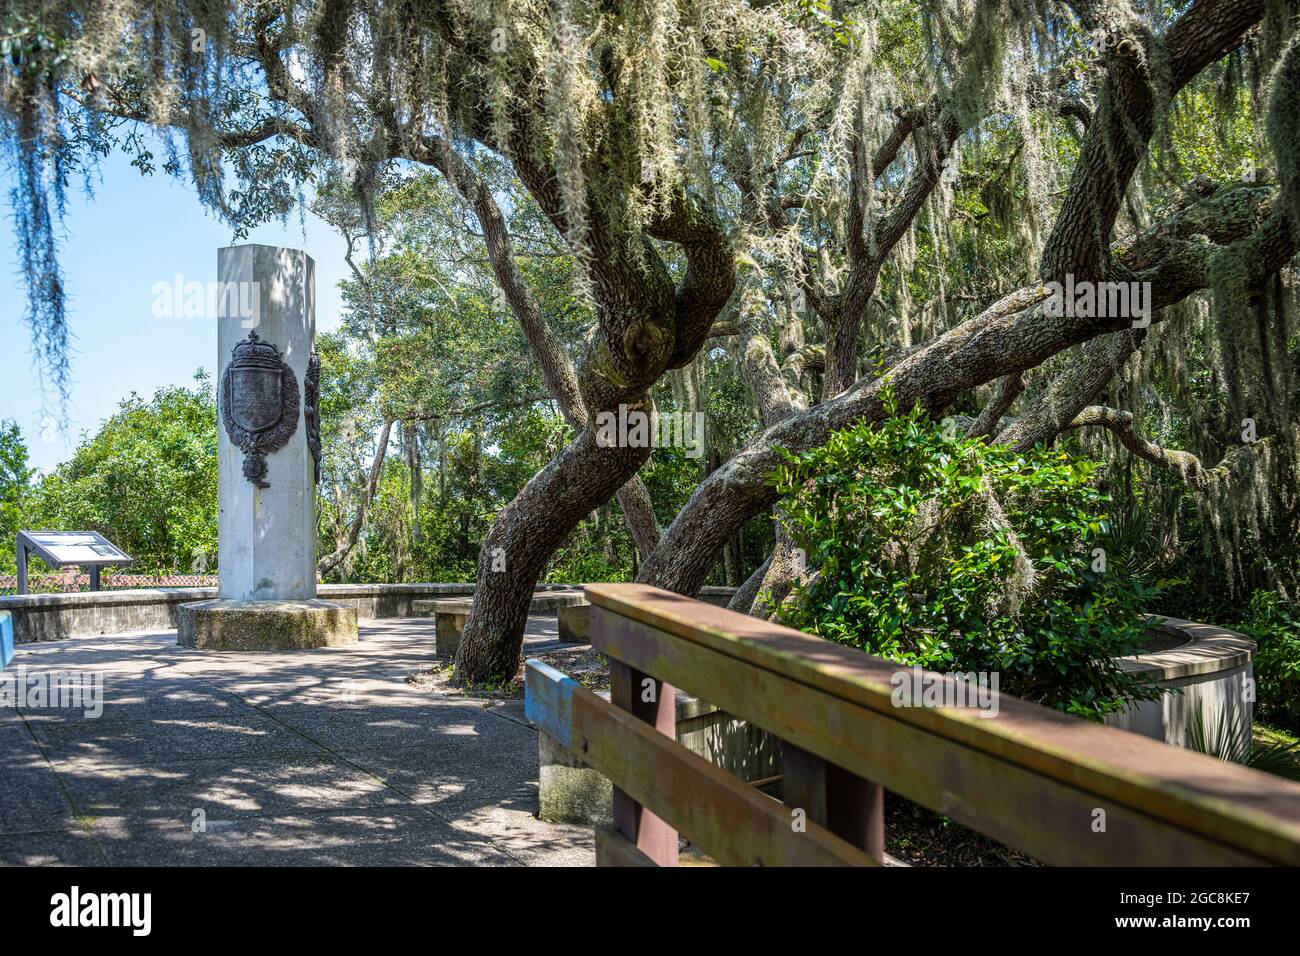 Das Ribault Monument (Ribault Column) erinnert an die Landung von Jean Ribault im Jahr 1562 in der Nähe der Mündung des St. Johns River im aktuellen Jacksonville, FL. Stockfoto